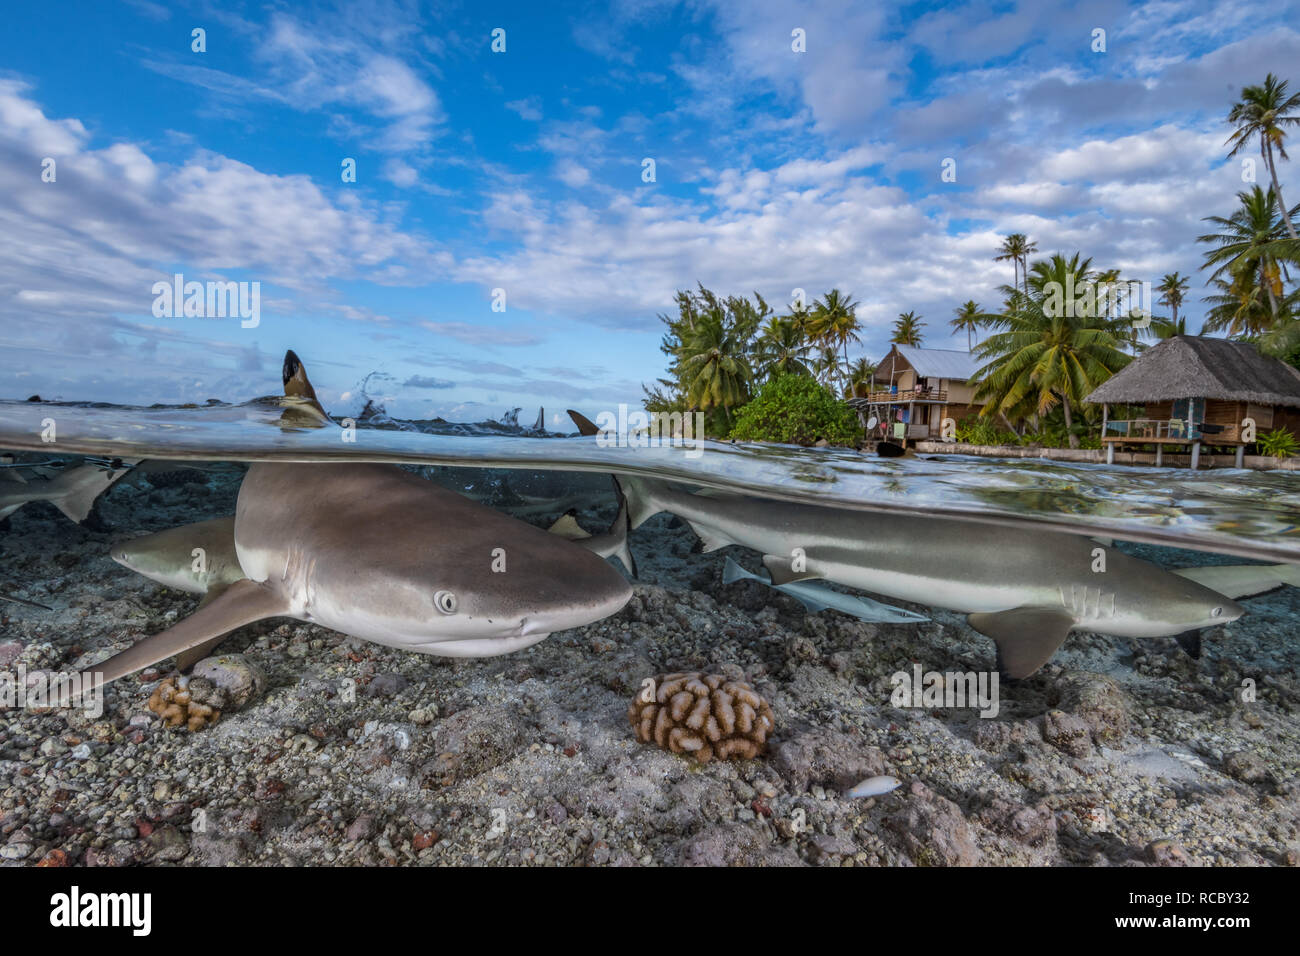 Blacktip squali di barriera coralline e nella parte anteriore di un'isola tropicale con palme e rifugi Foto Stock